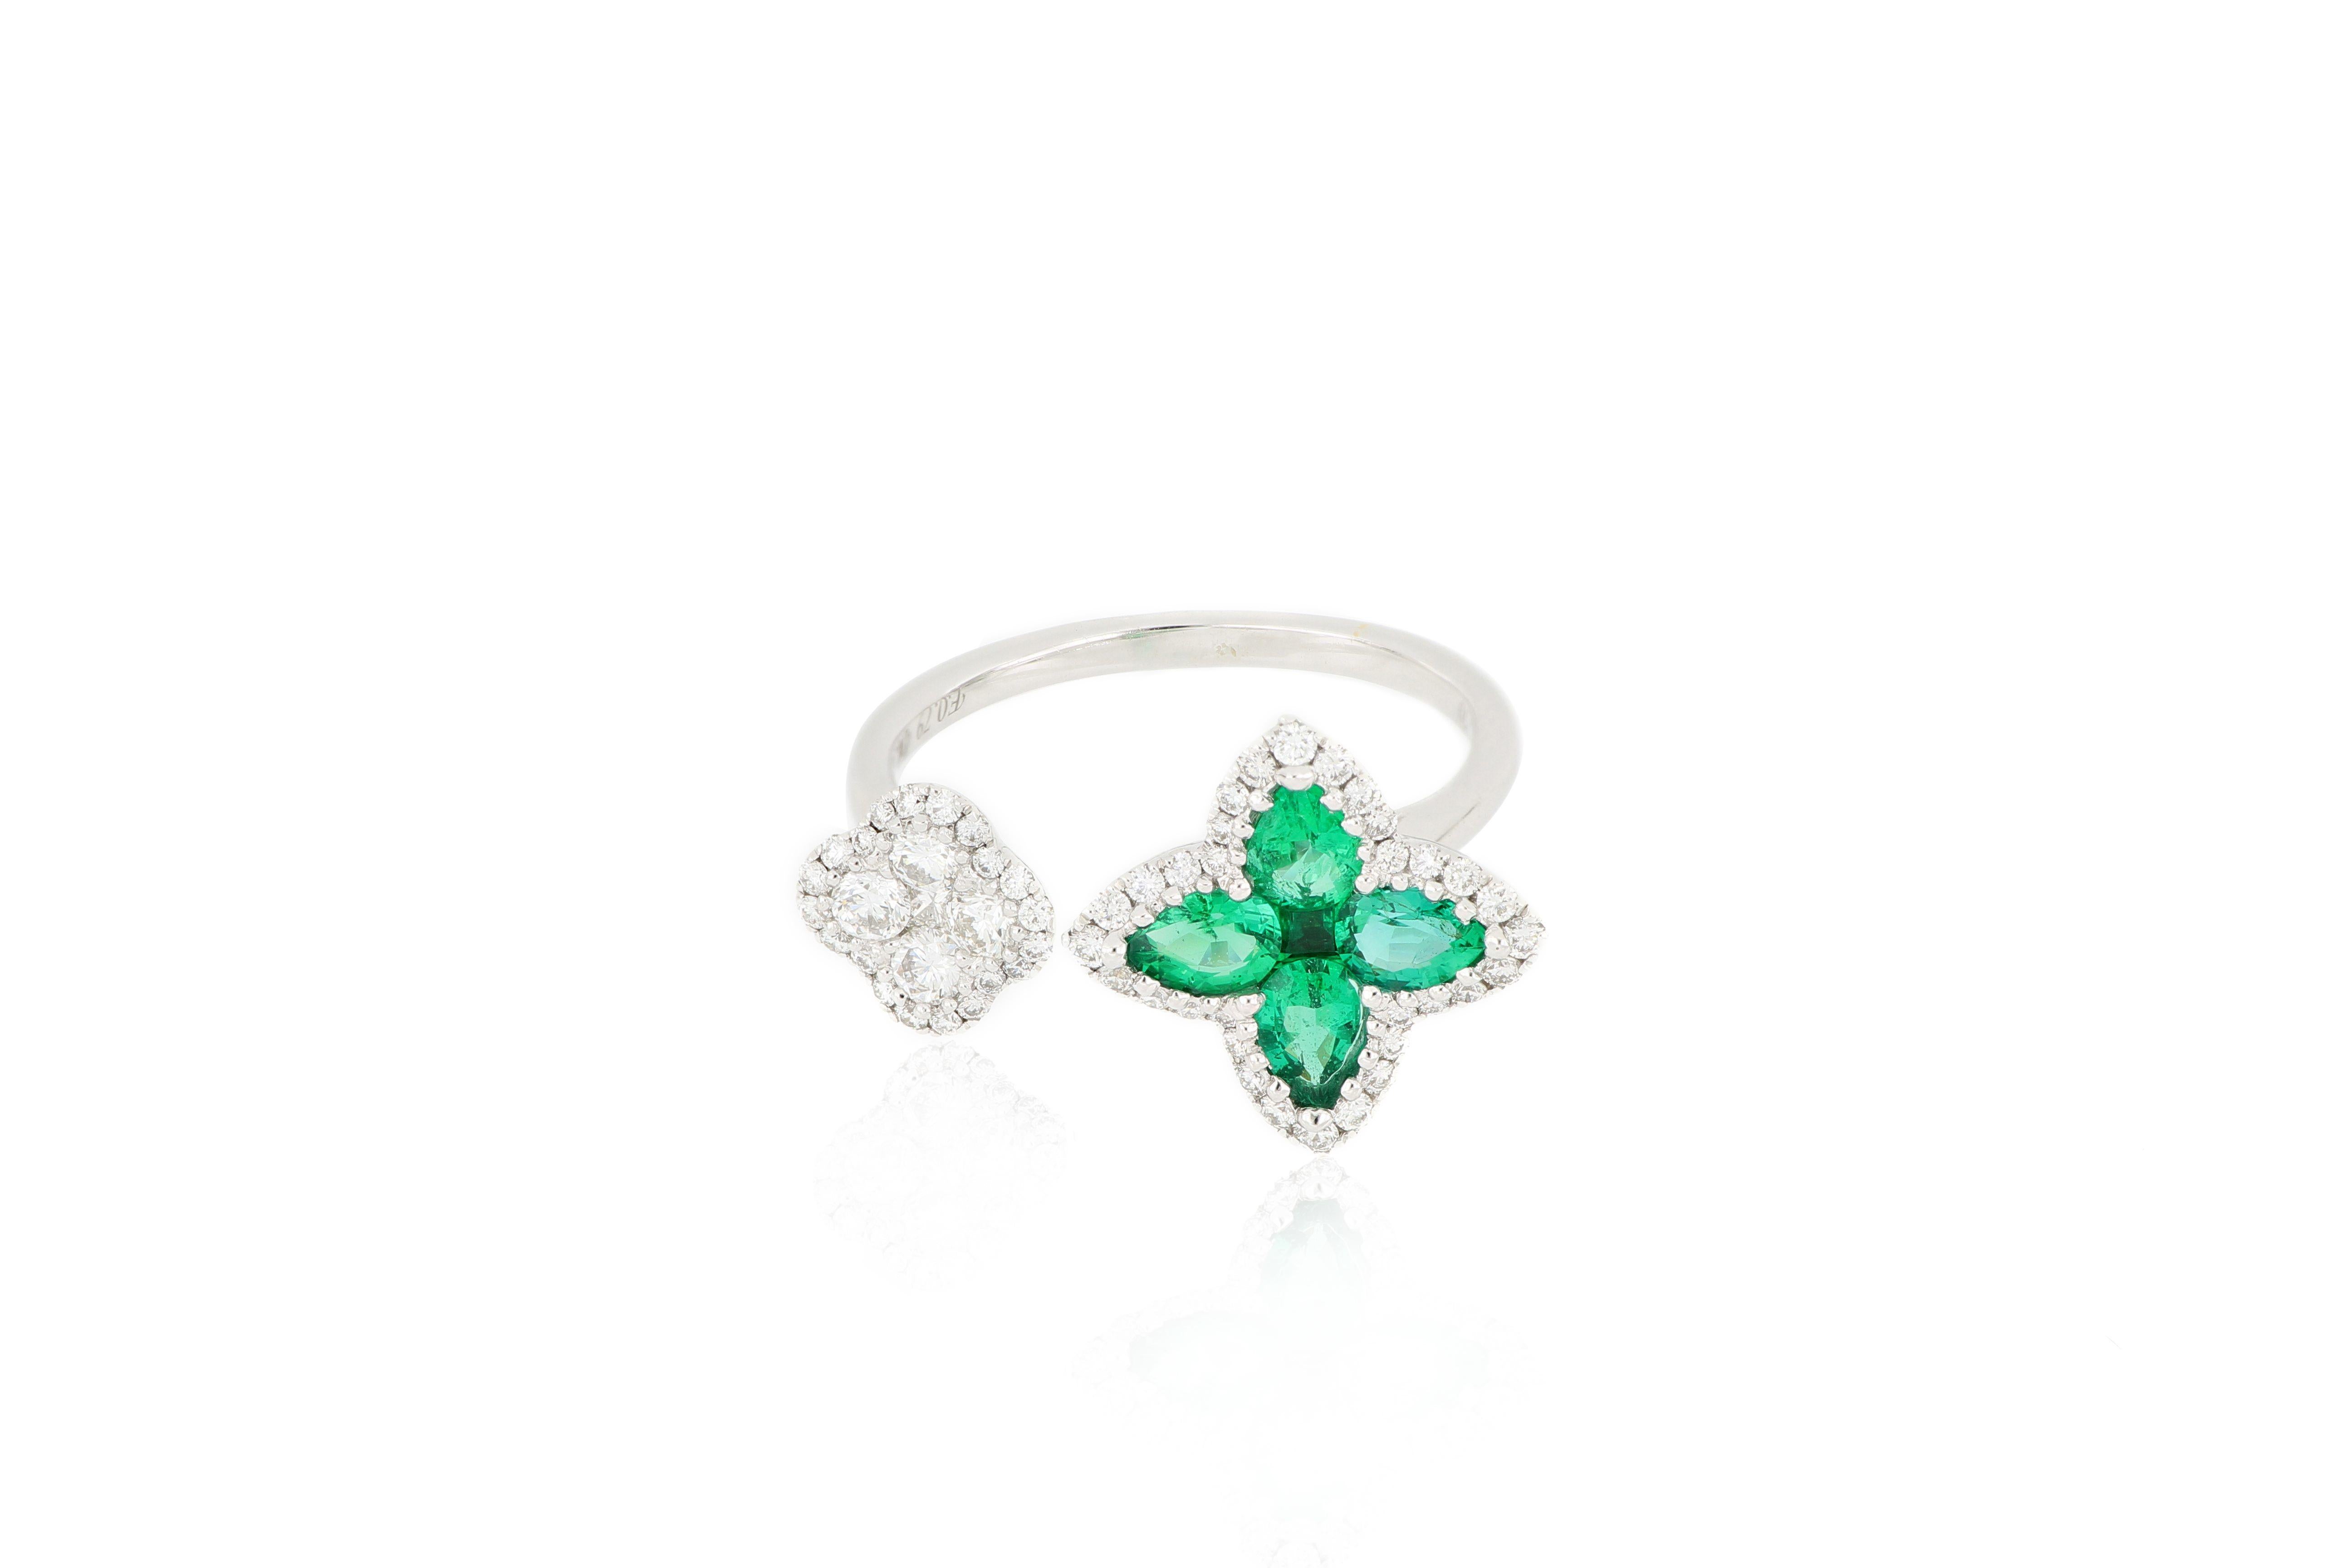 Ein exquisiter Smaragdring, besetzt mit einem natürlichen Smaragd von 0,79 Karat und Brillanten von insgesamt 0,52 Karat, montiert in 18 Karat Weißgold. Ein sehr stilvoller Ring, der zu jeder Gelegenheit getragen werden kann.
O'Che 1867 ist bekannt